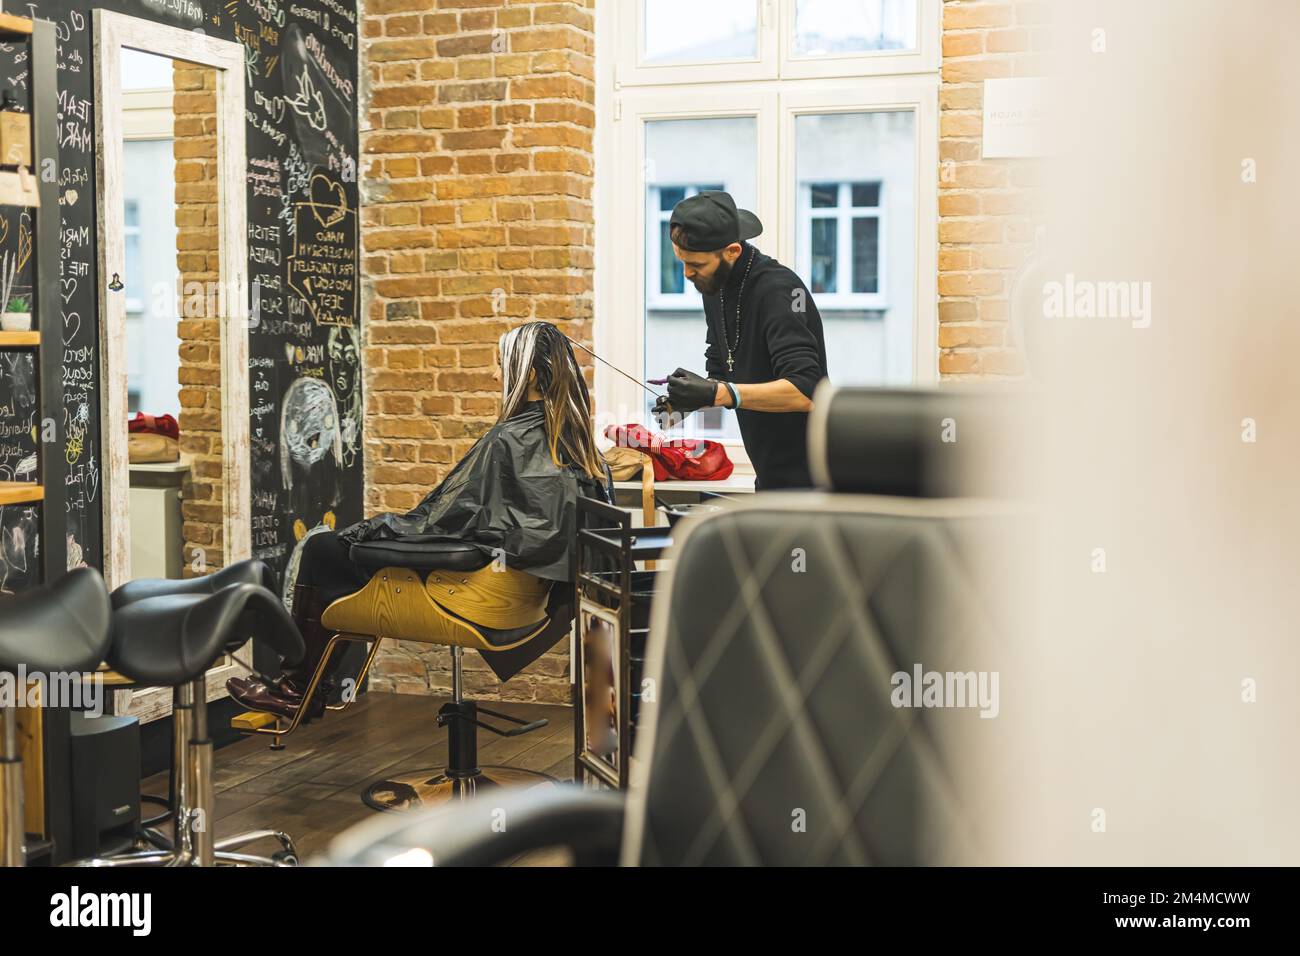 Coiffeur au travail. Cline avec de longs cheveux assis sur une chaise au salon de coiffure. Prise de vue en intérieur sur toute la longueur. Intérieur de salon de coiffure. Photo de haute qualité Banque D'Images